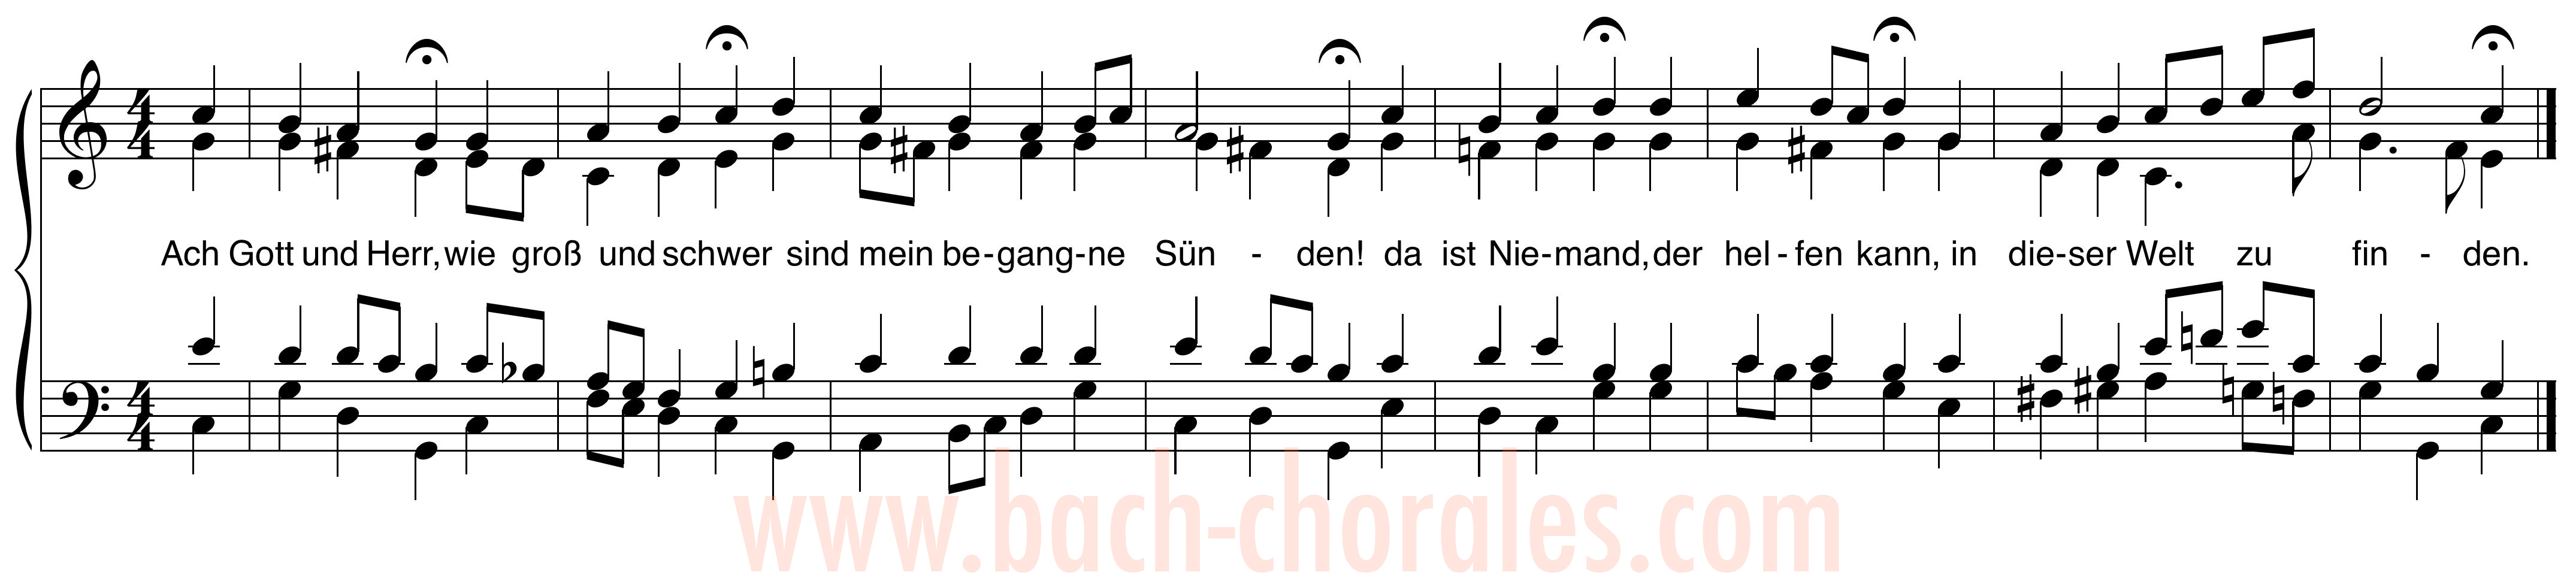 notenbeeld BWV 255 op https://www.bach-chorales.com/